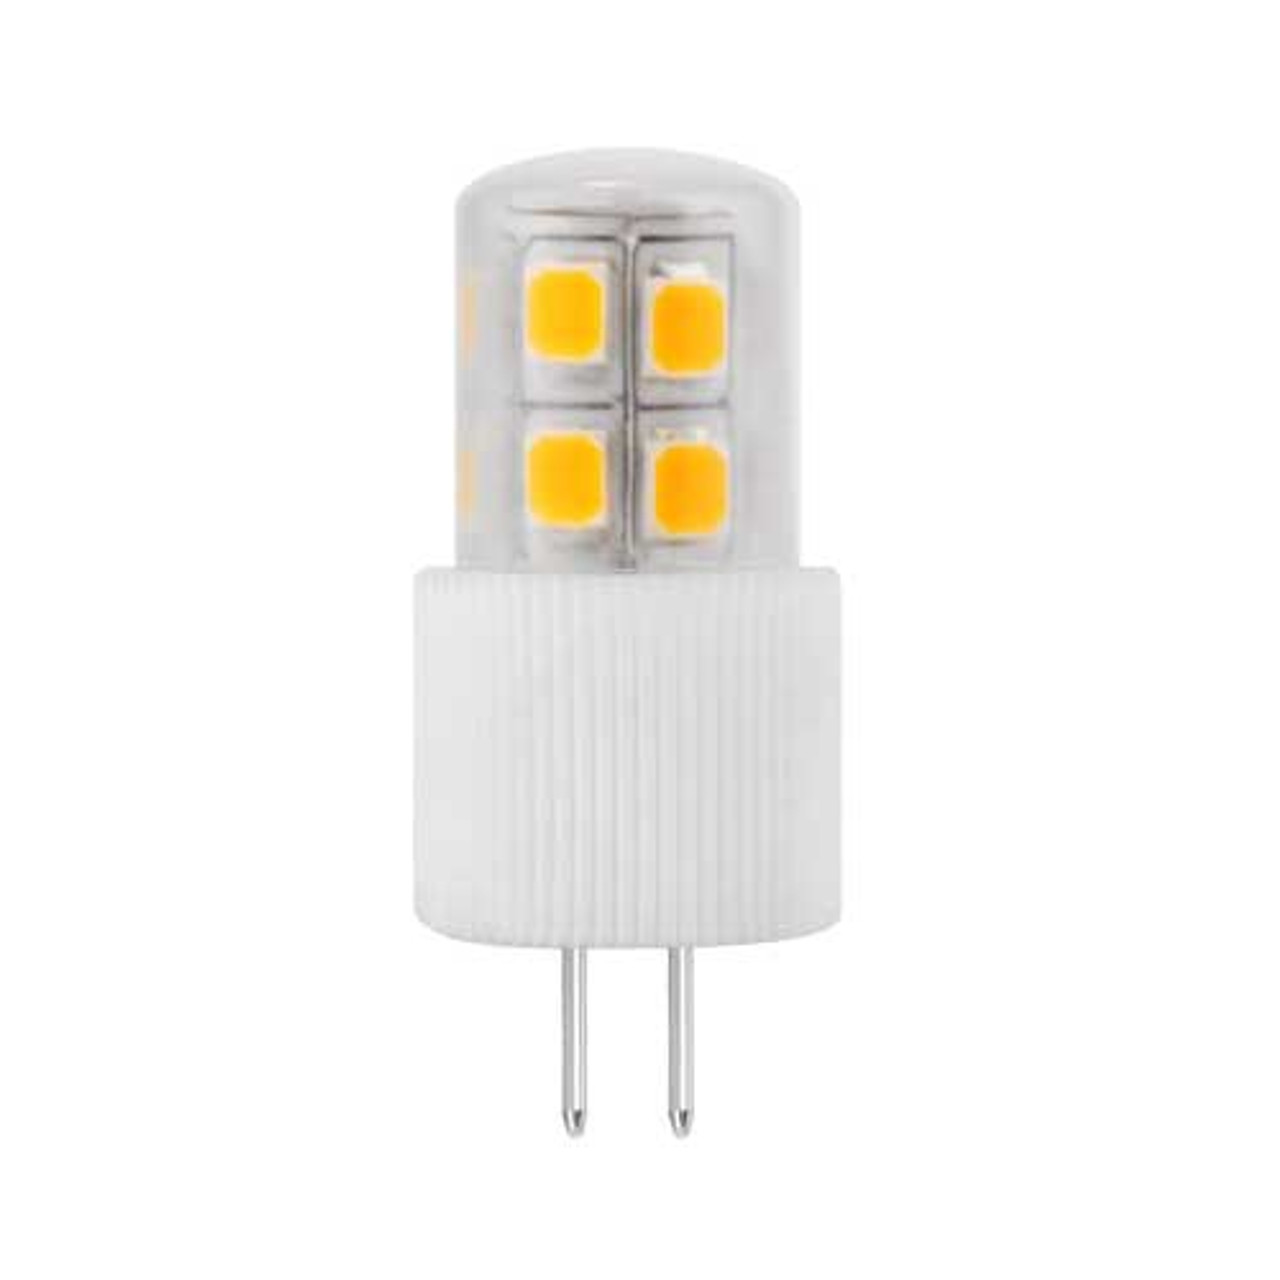 EmeryAllen EA-G4-2.0W-003-3090 LED Bi-Pin G4 Light Bulb